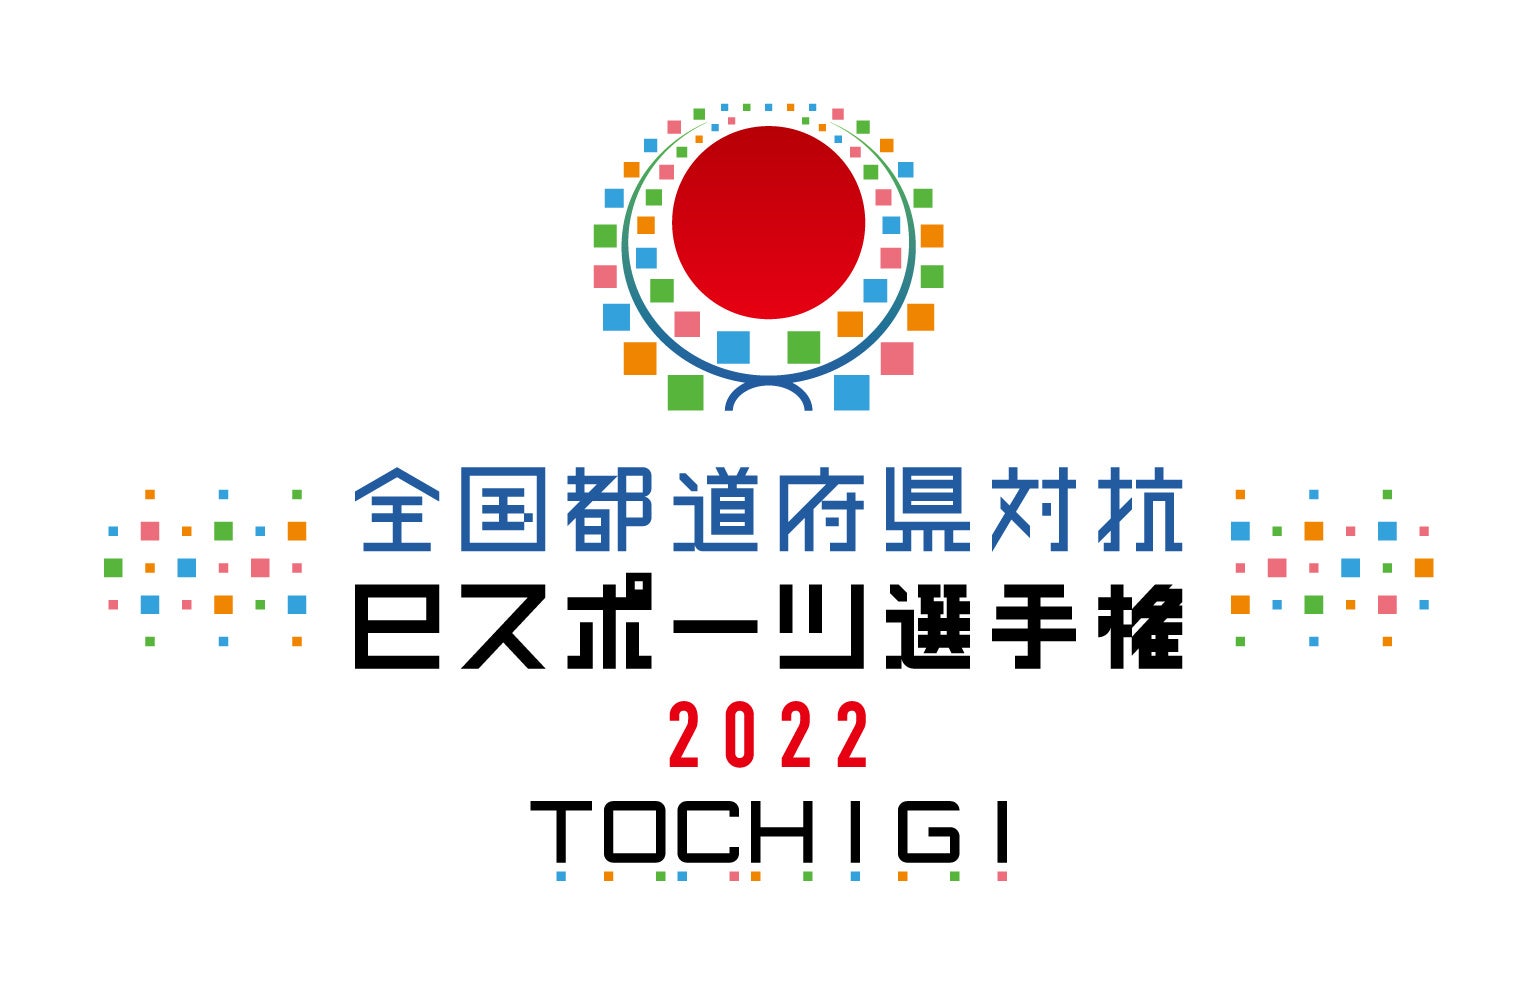 日本最大級のアミューズメントポーカーハウス
「歌留多(カルタ)」、2022年5月2日に心斎橋にオープン　
～カジノ設立のコンセプト～